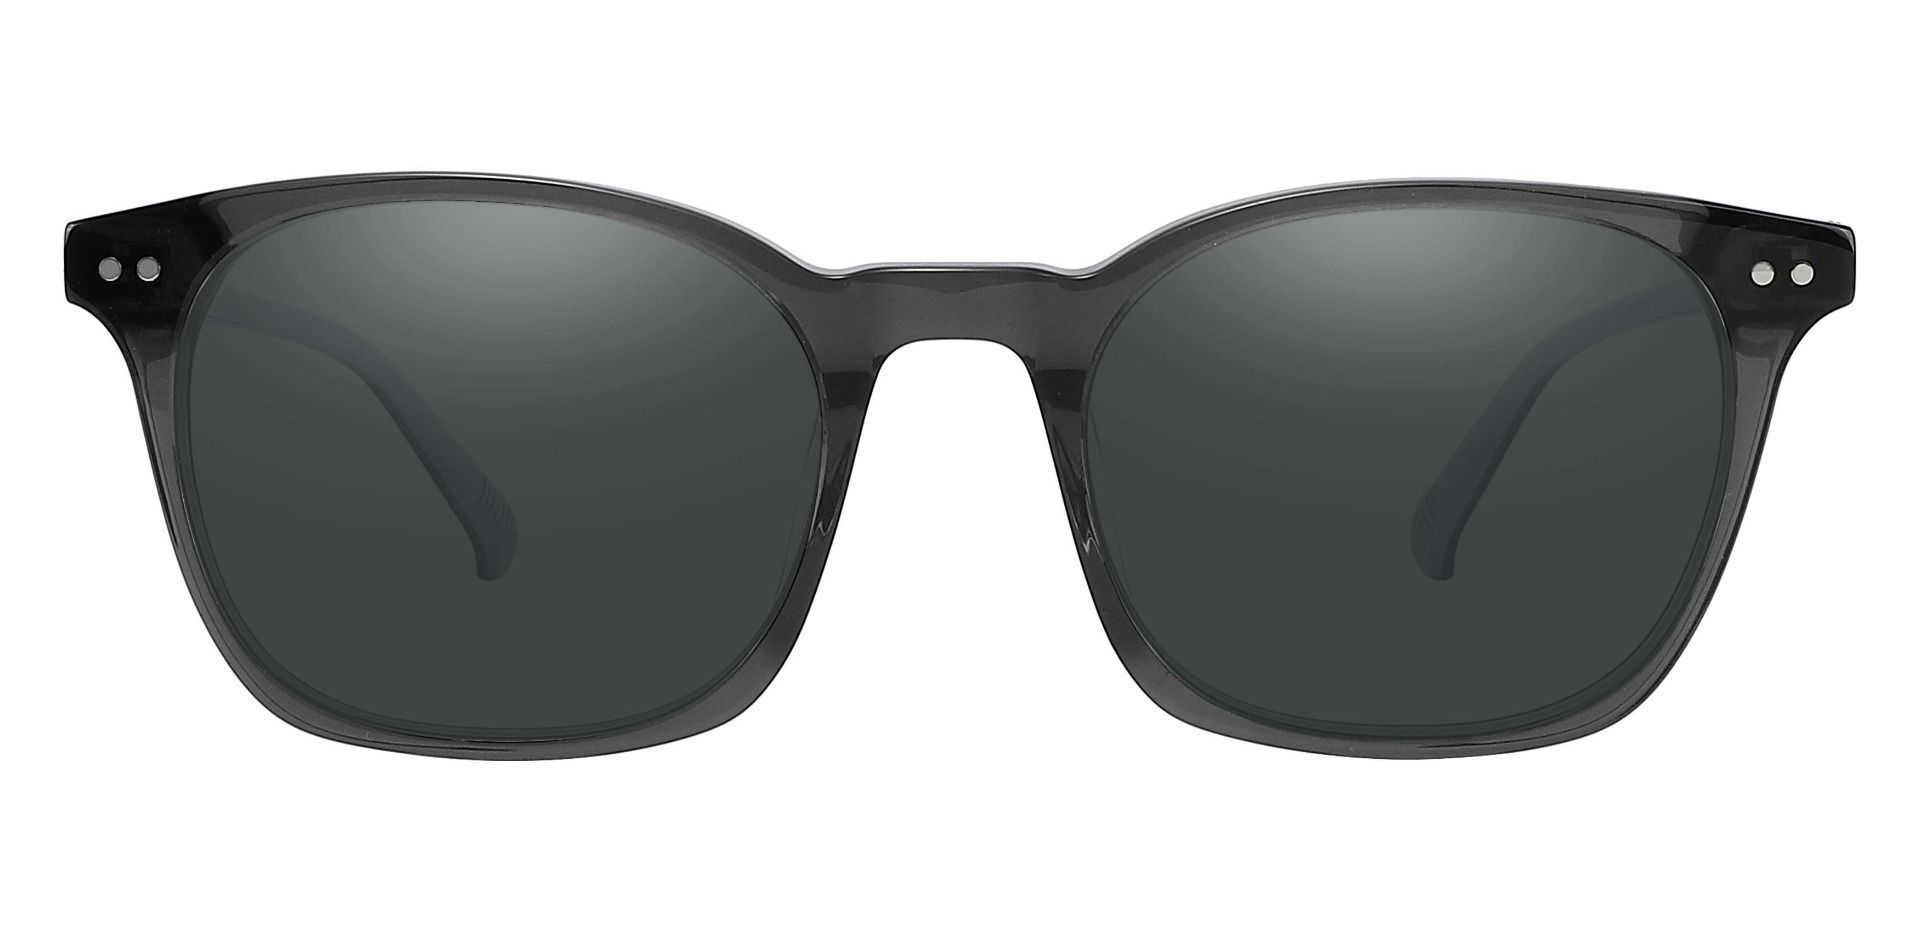 Alonzo Square Non-Rx Sunglasses - Gray Frame With Gray Lenses